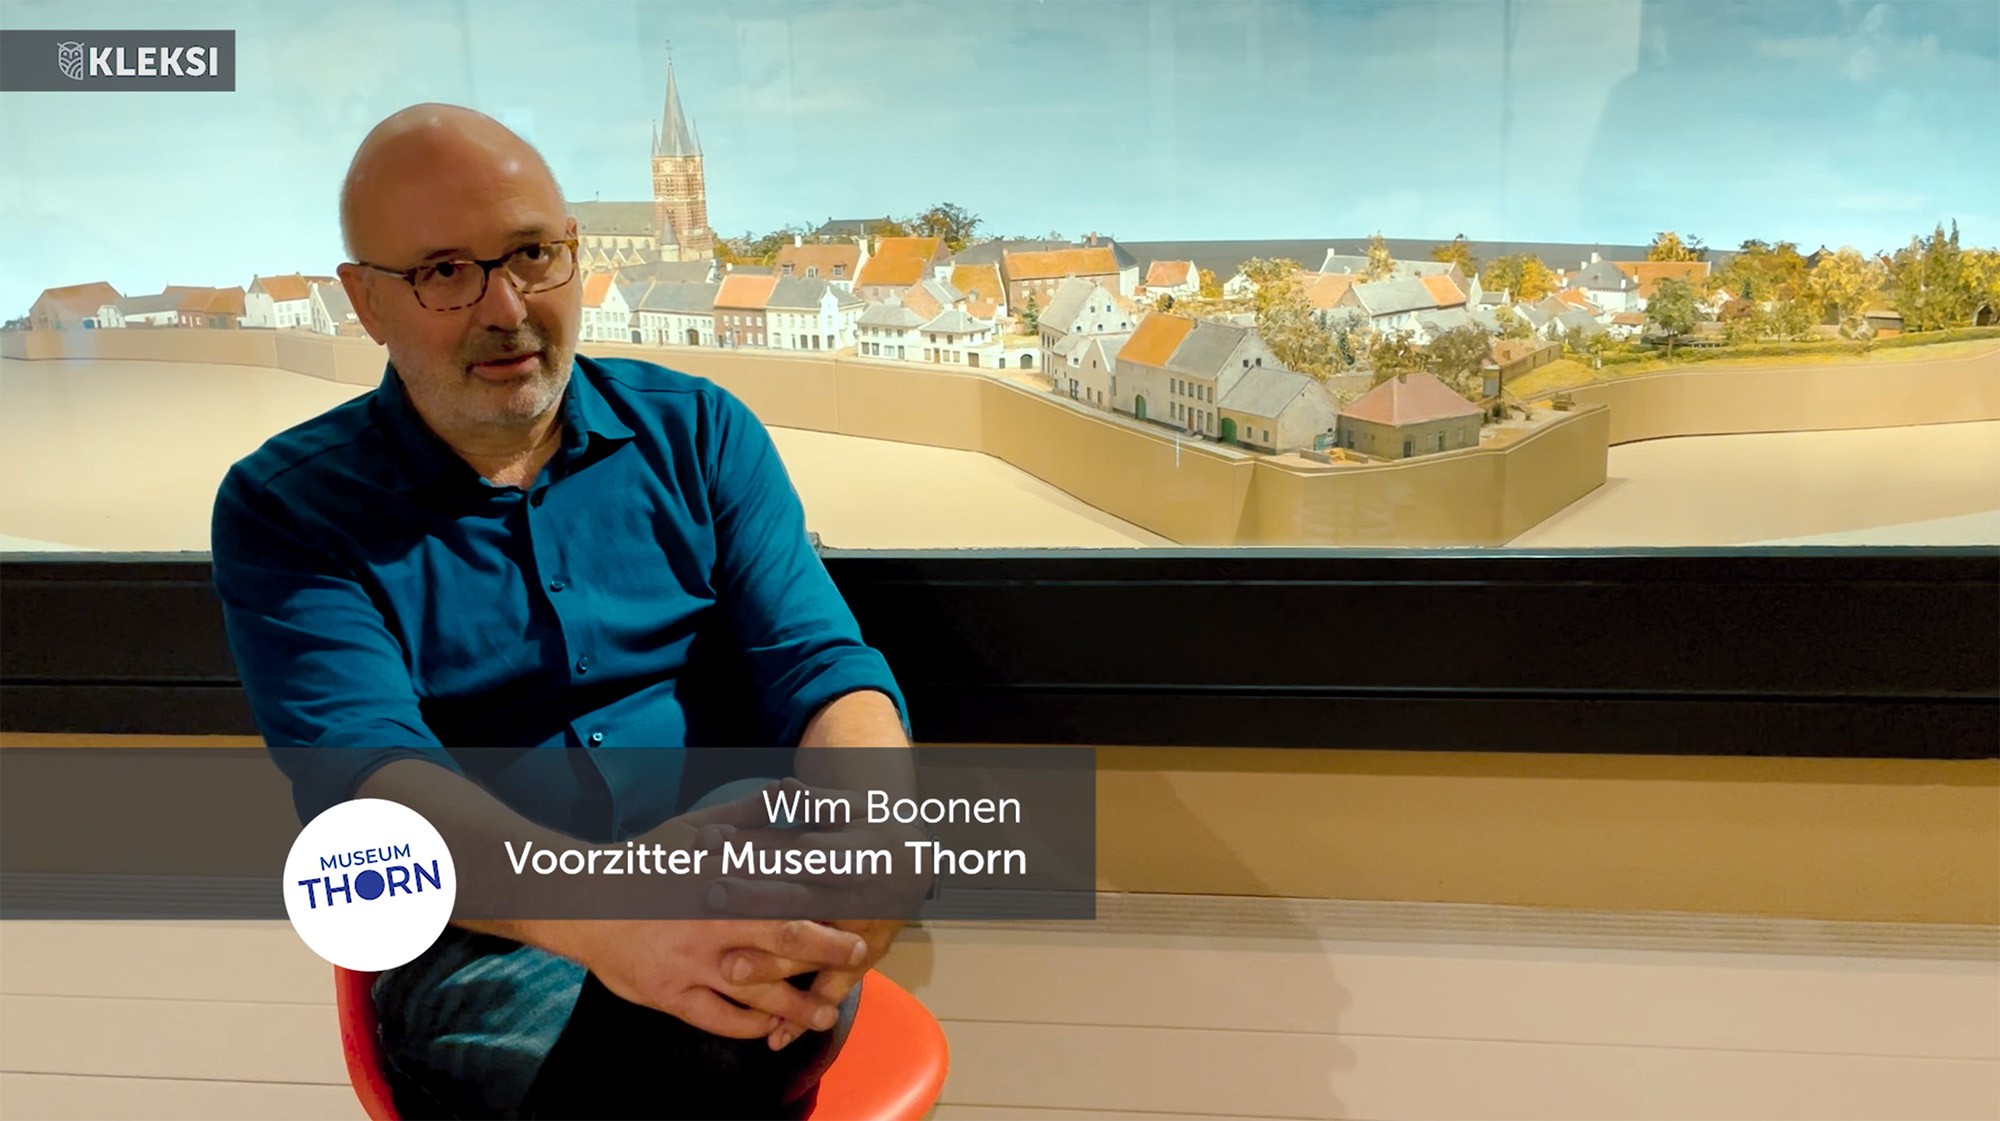 Wim Boonen, voorzitter Museum Thorn verteld waarom het museum voor KLEKSI heeft gekozen